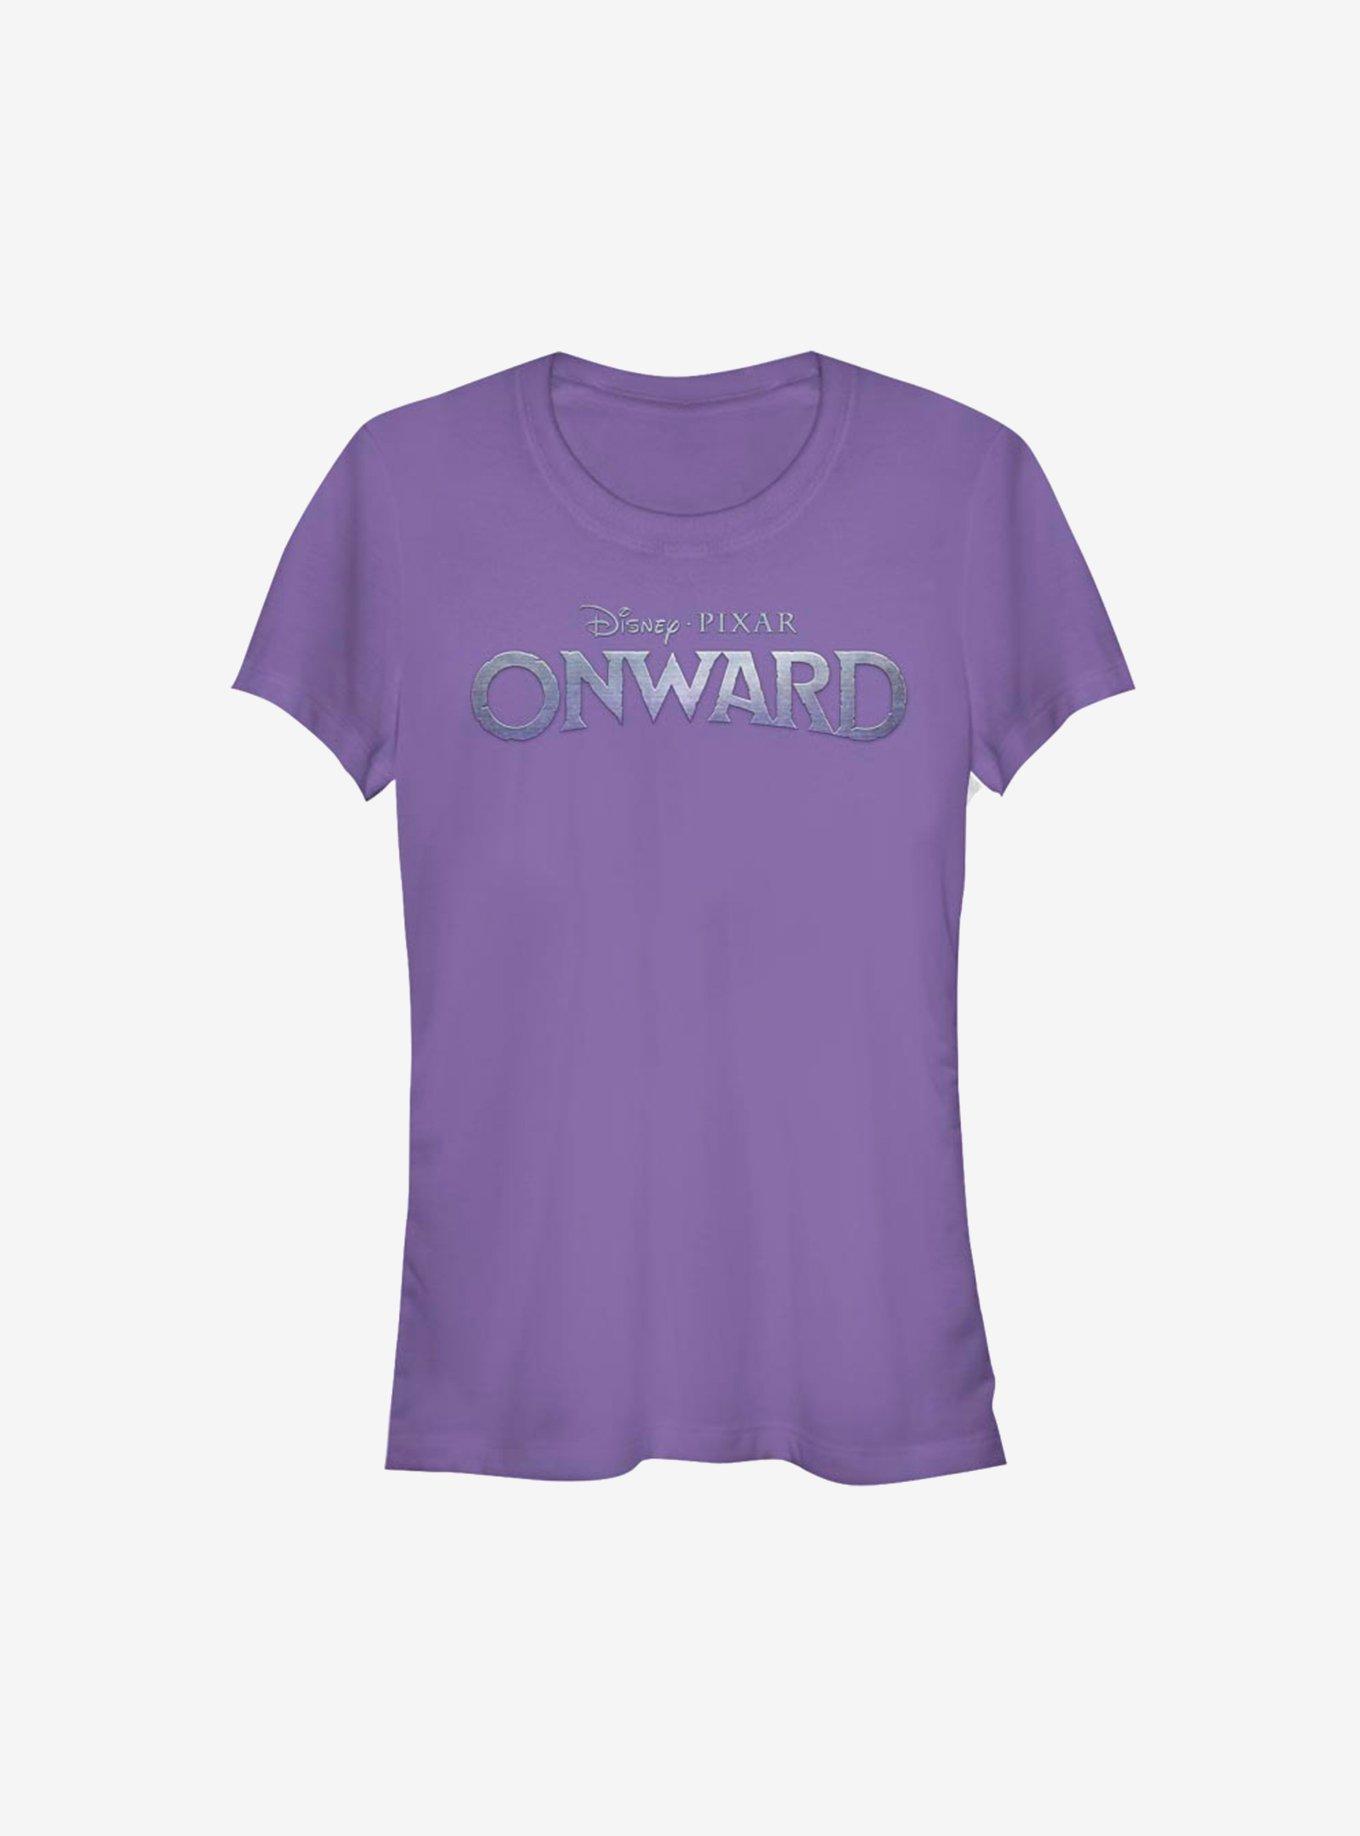 Disney Pixar Onward Logo Girls T-Shirt